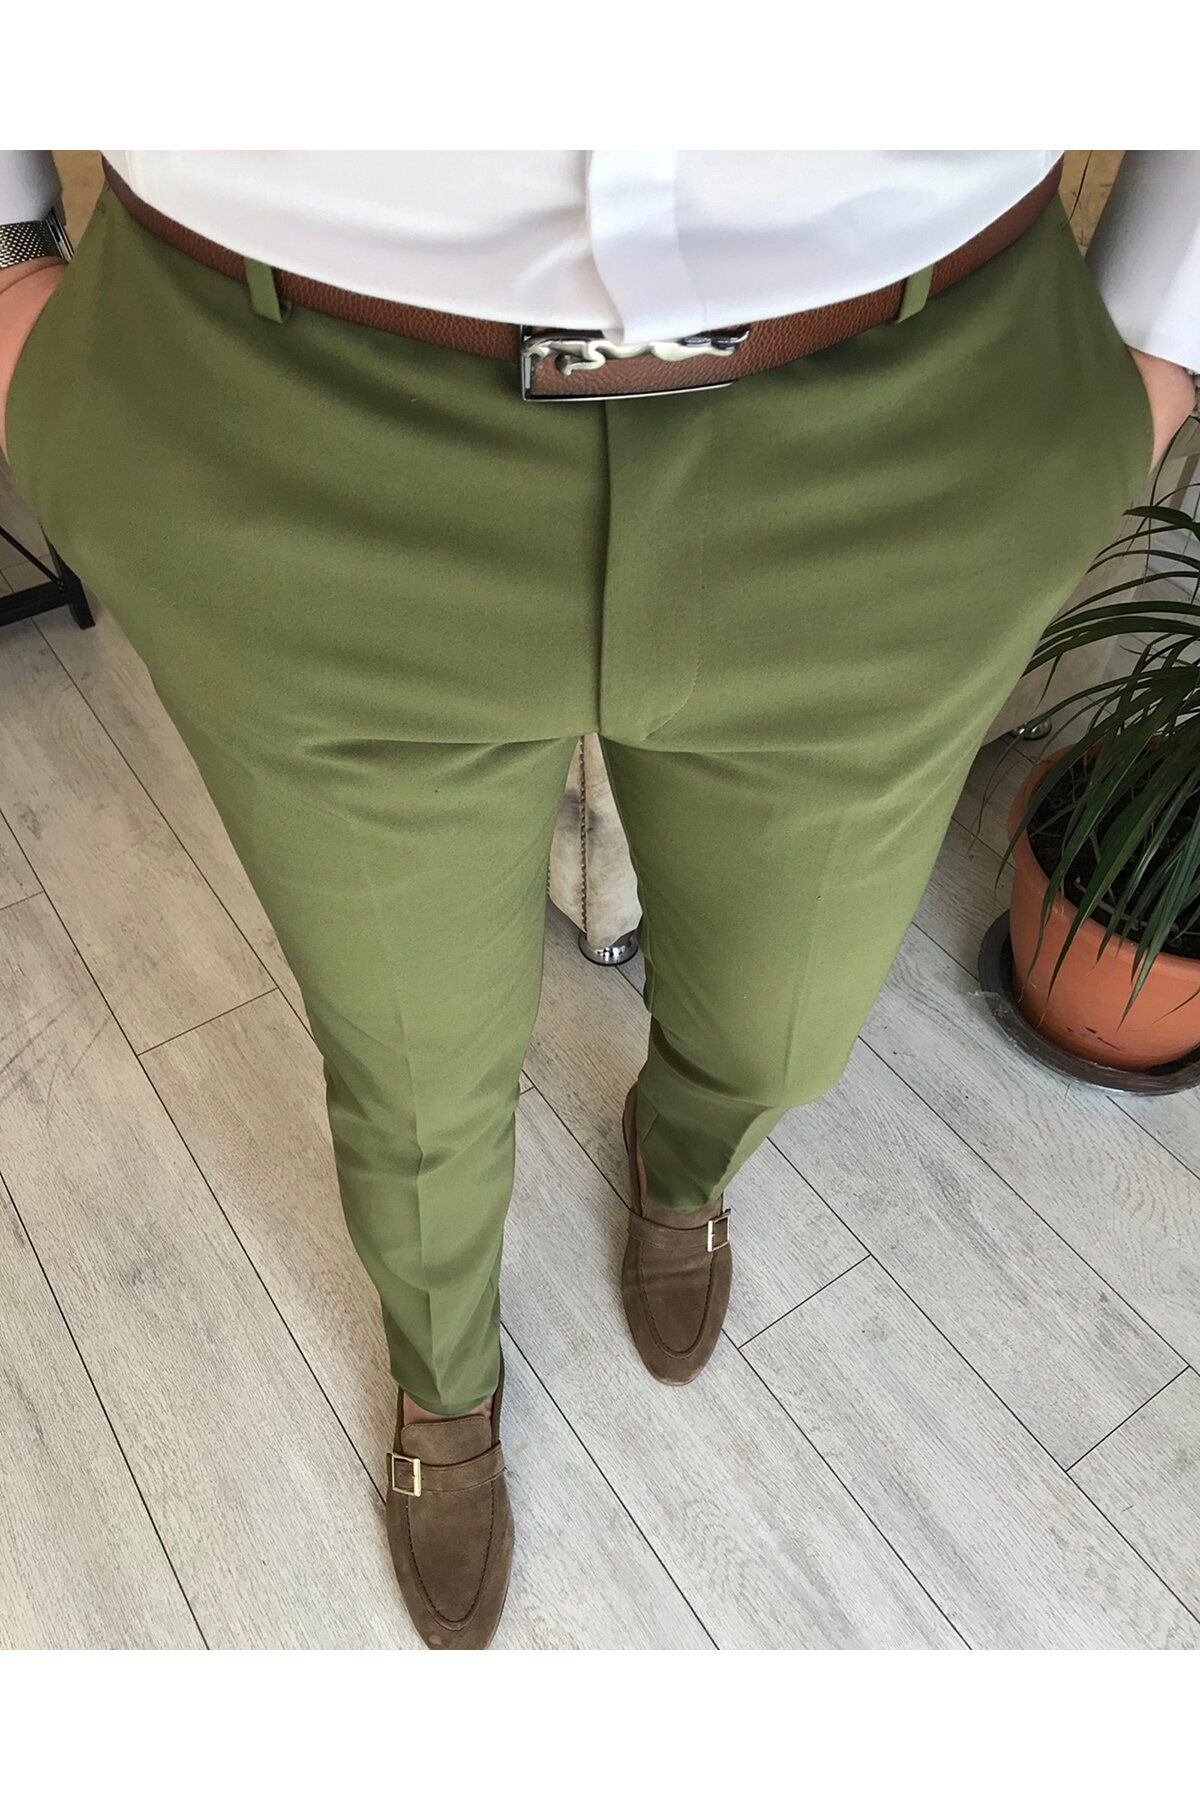 TerziAdemAltun İtalyan Stil Slim Fit Erkek Kumaş Pantolon Yeşil T5251